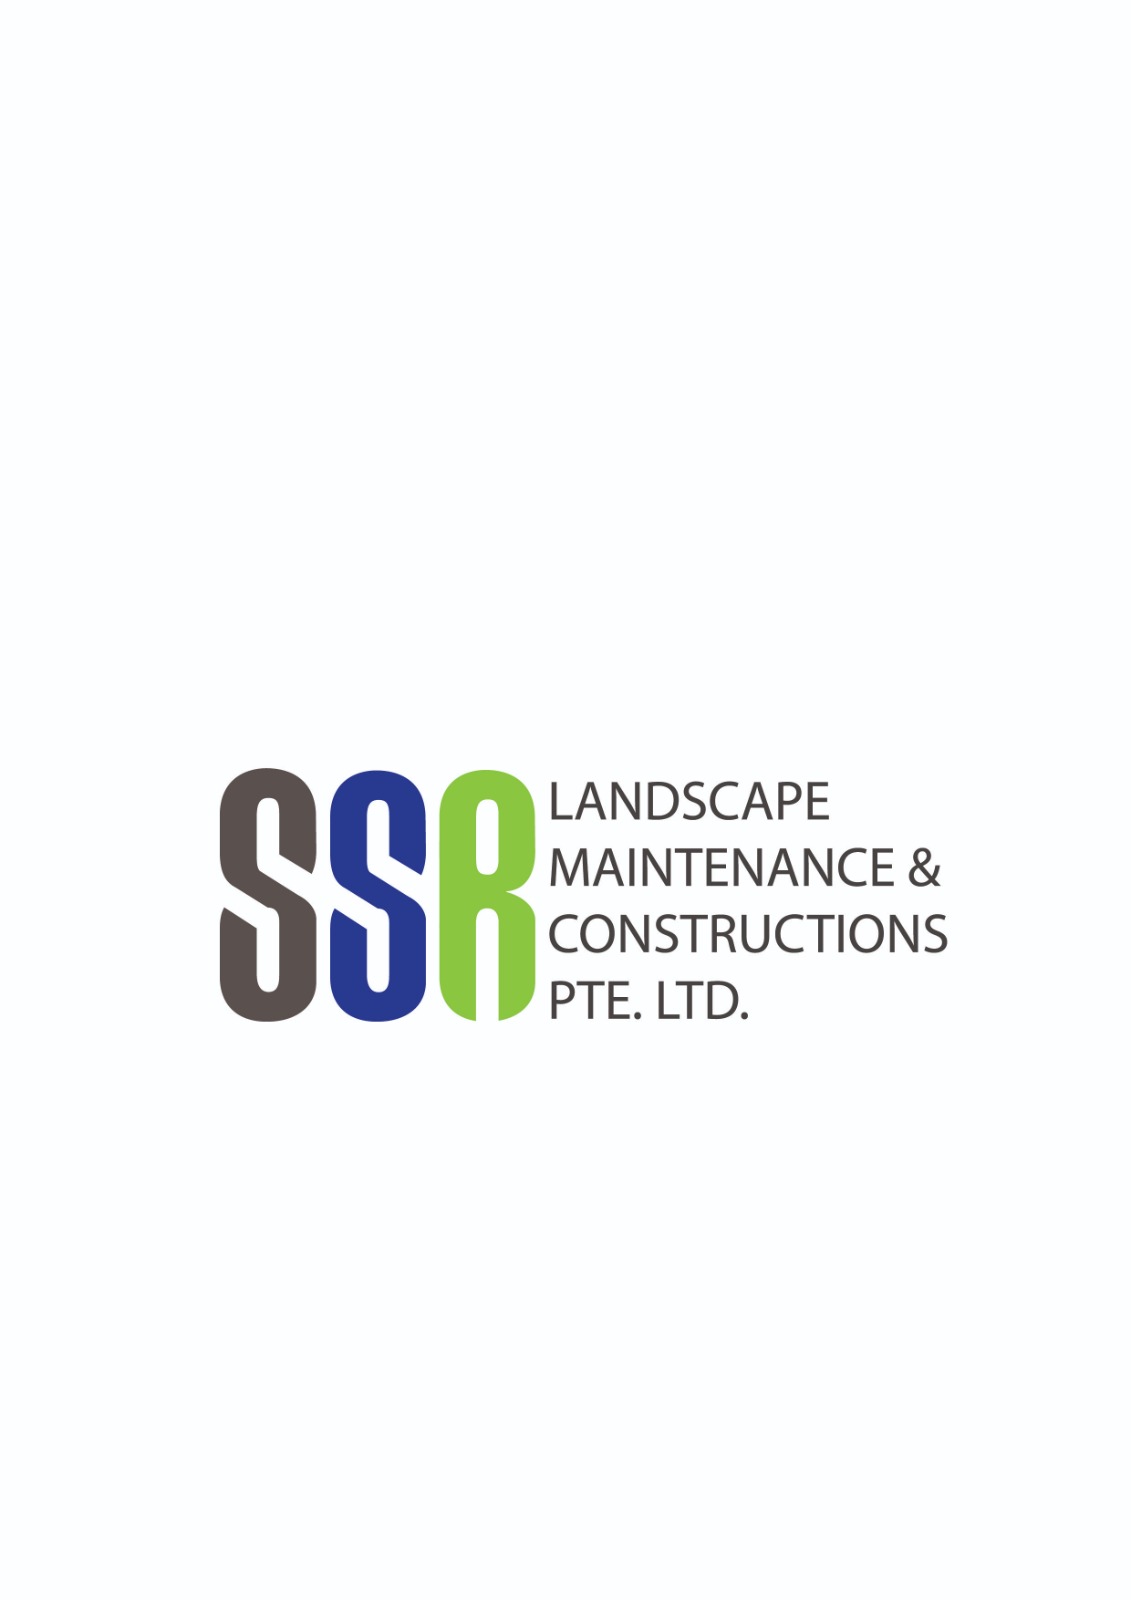 Ssr Landscape Maintenance & Construction Pte. Ltd. company logo